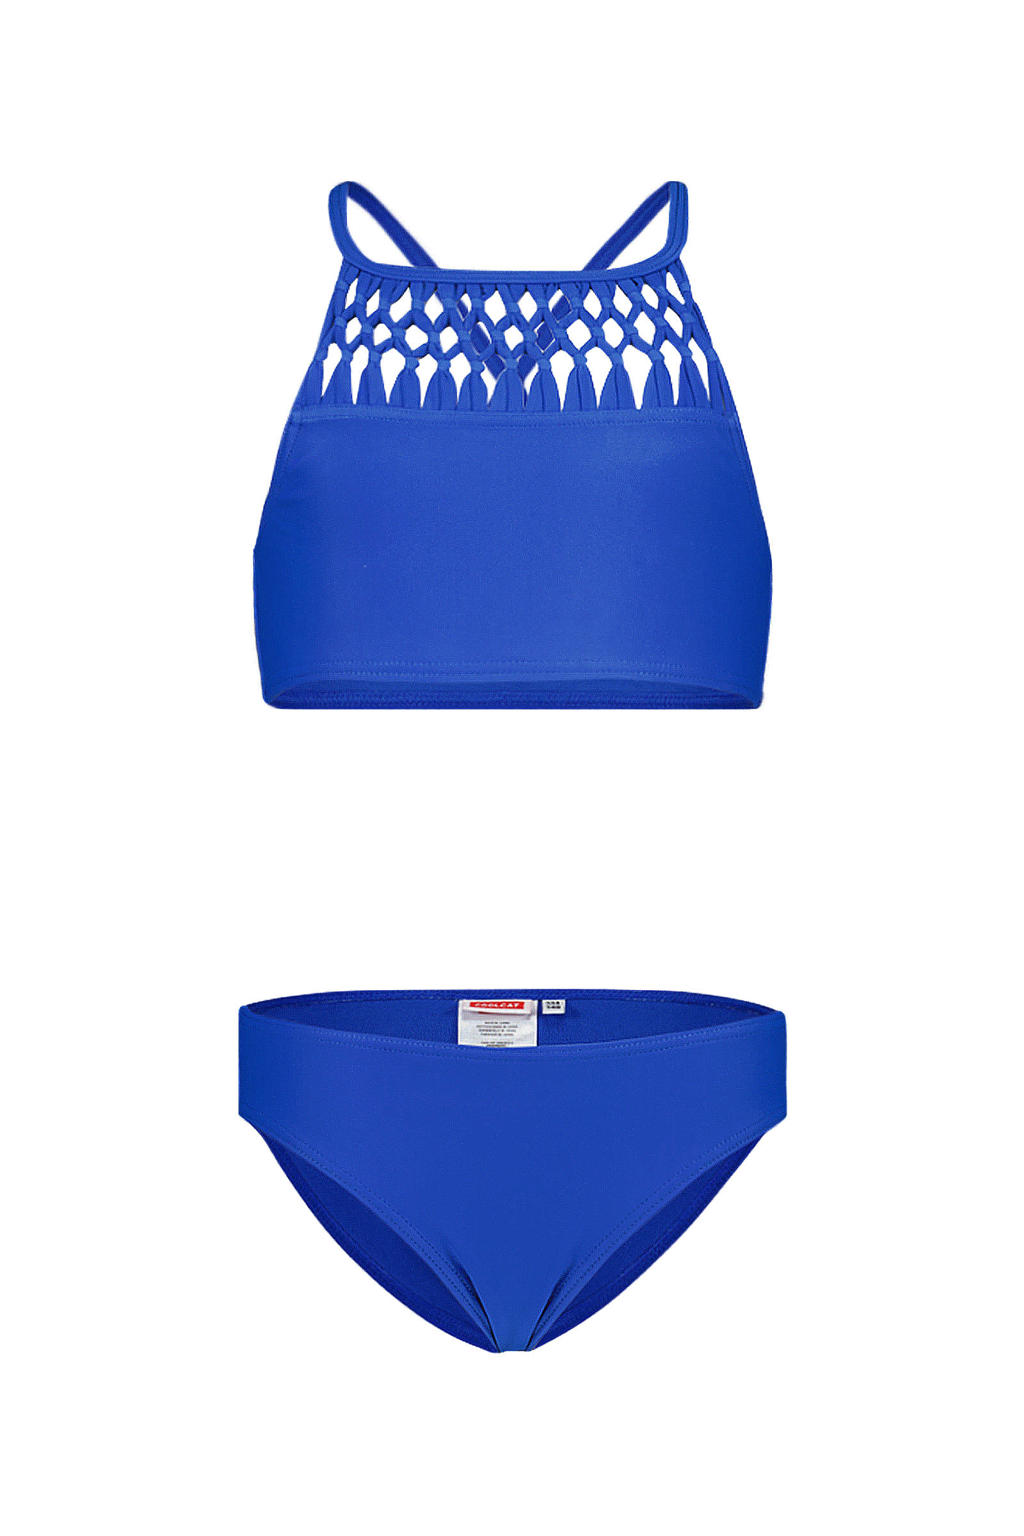 CoolCat Junior bikini Yessie blauw